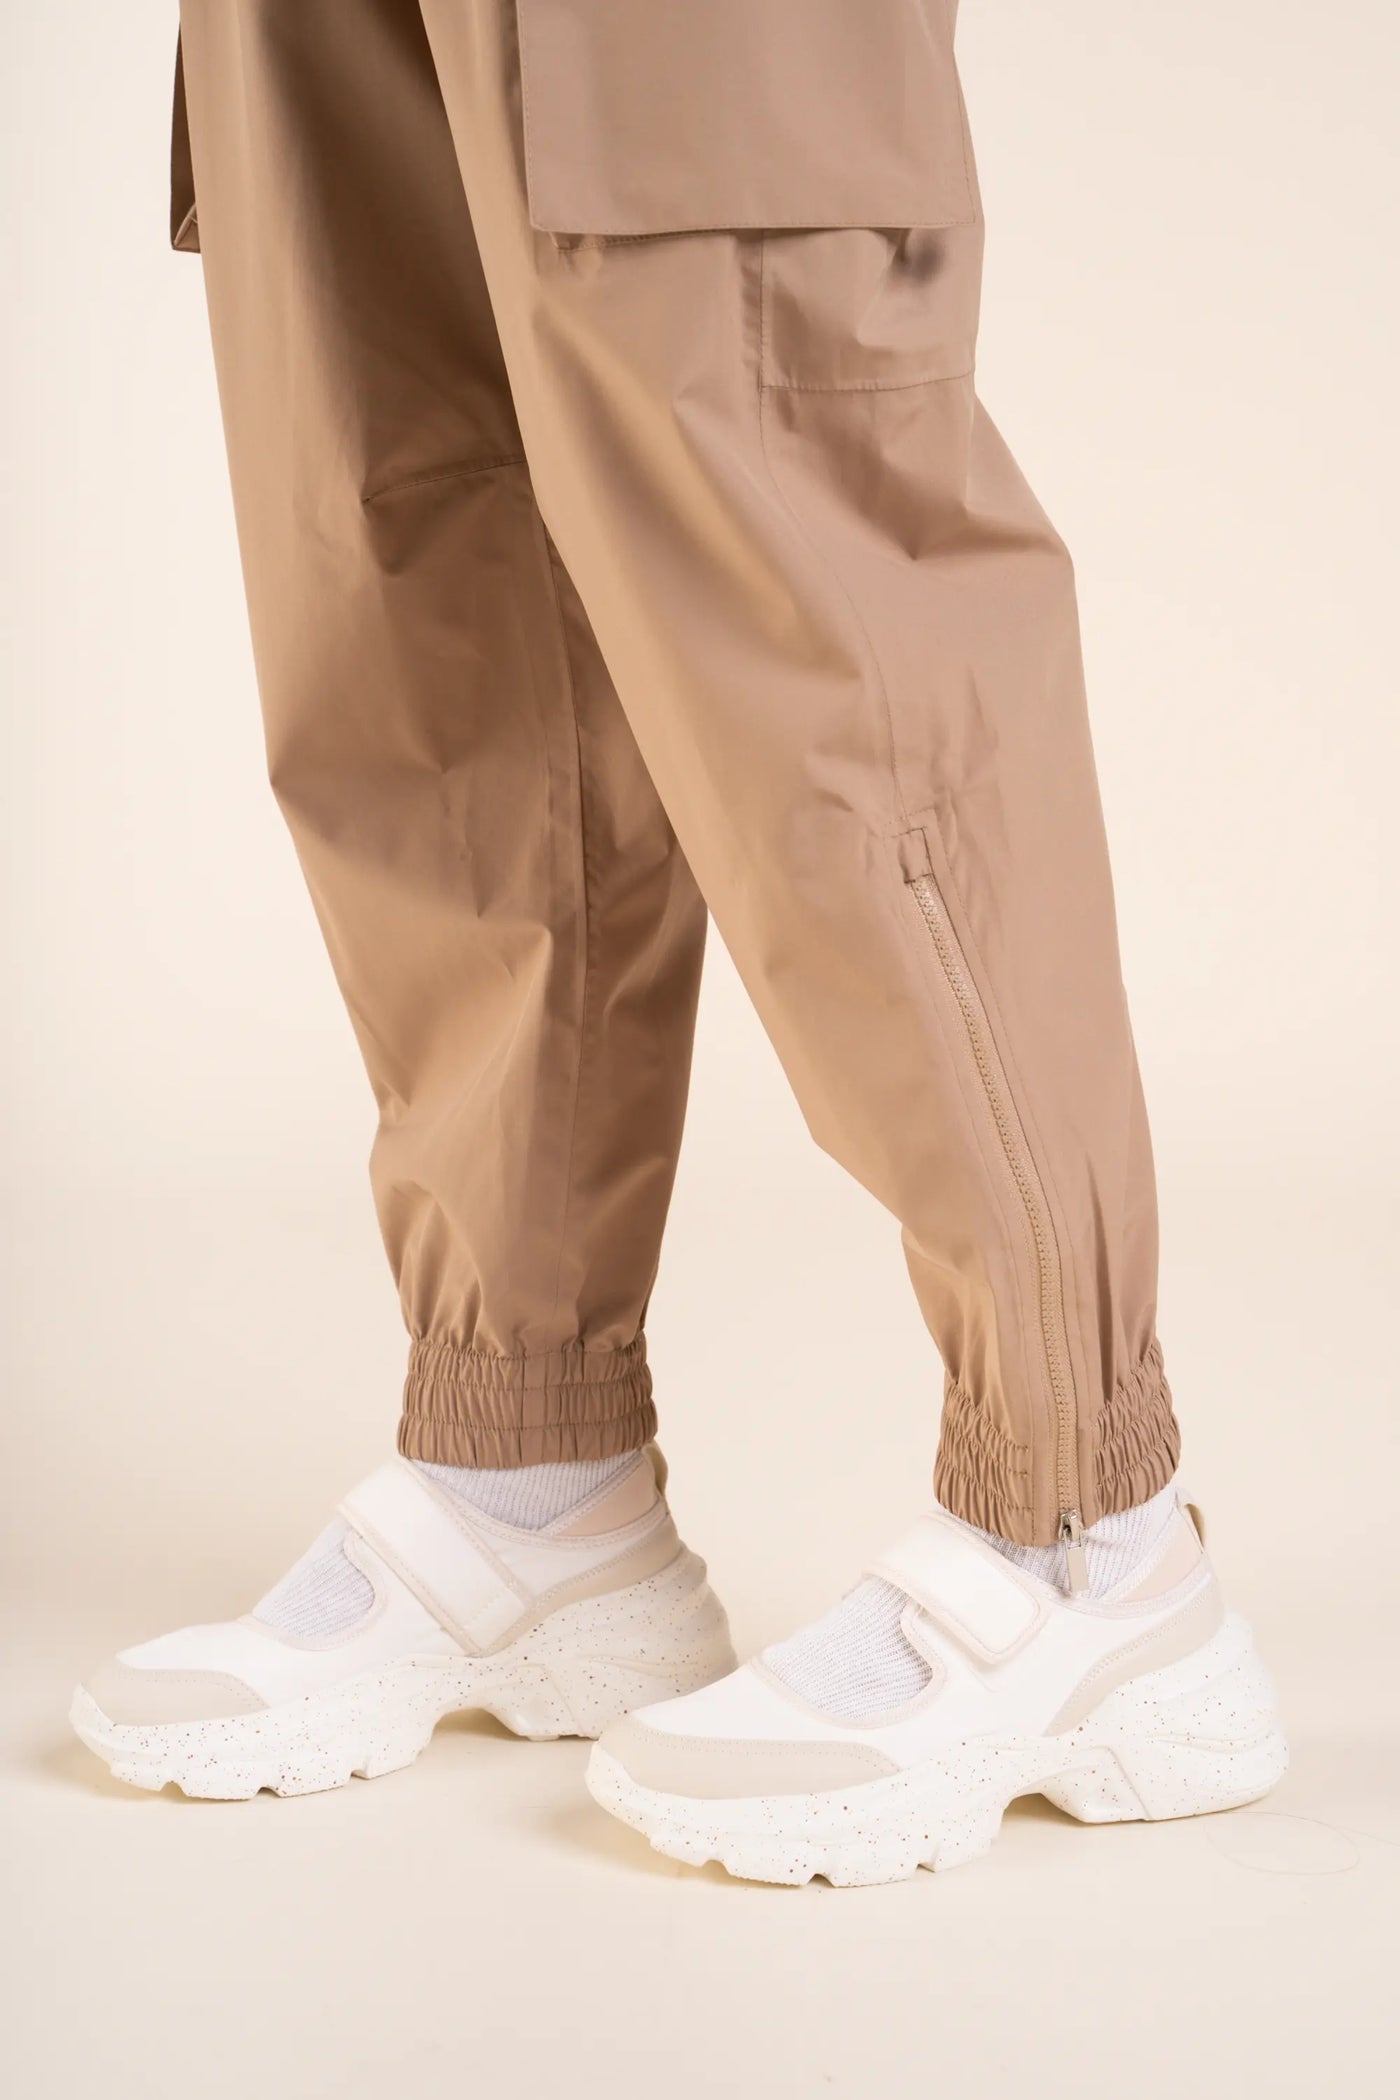 Pantalon imperméable Gambetta cargo multipoches #couleur_sahara